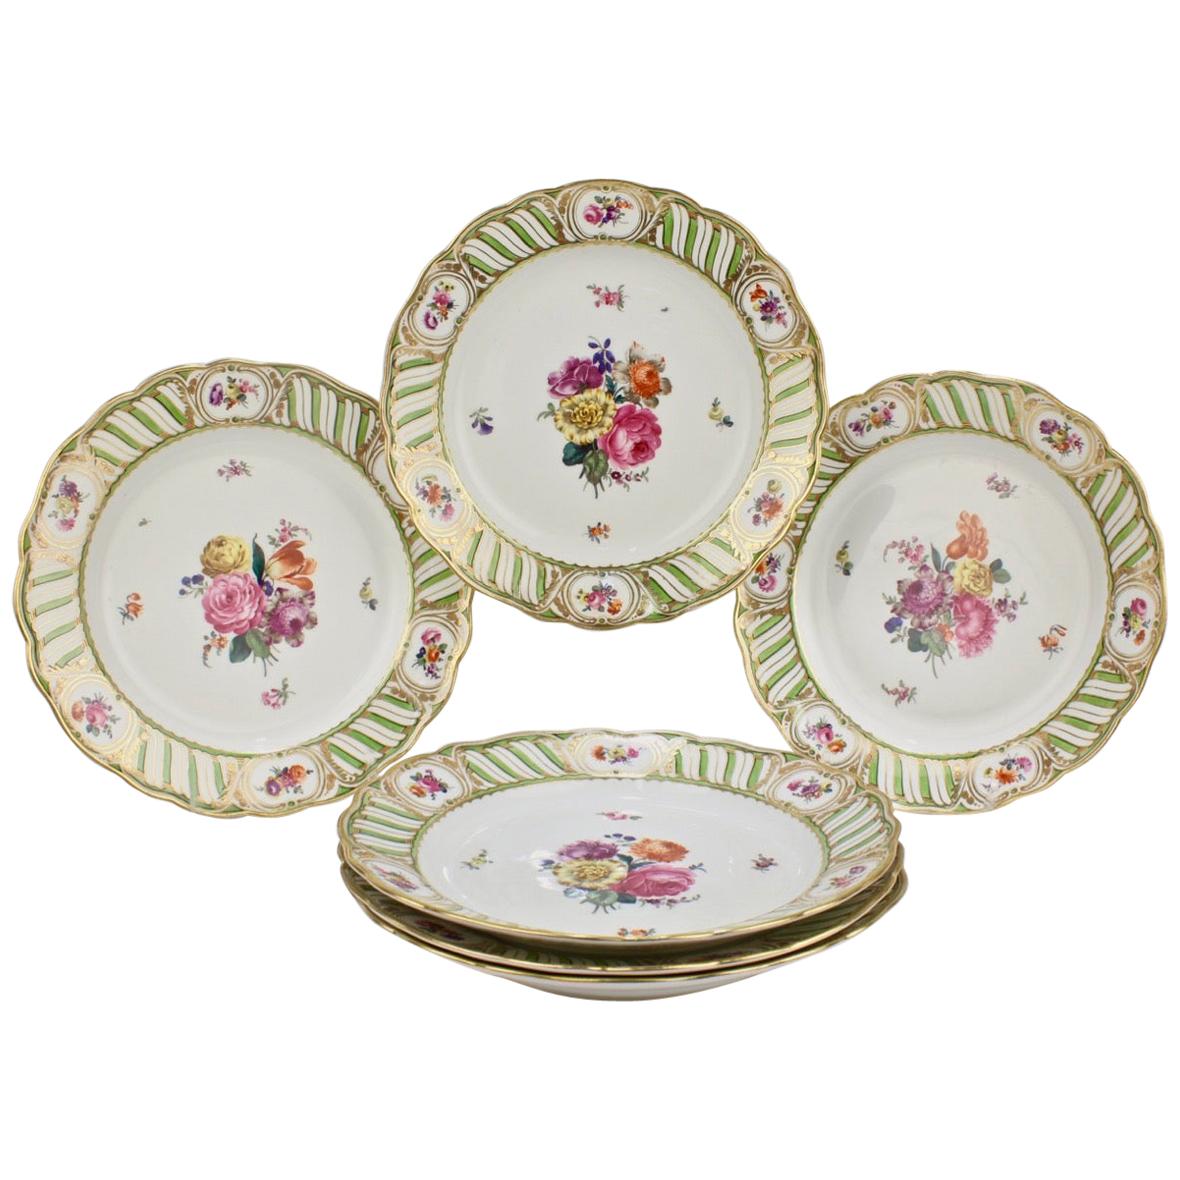 6 Antique Vienna Porcelain Plates with Green Borders & Deutsche Blumen Flowers